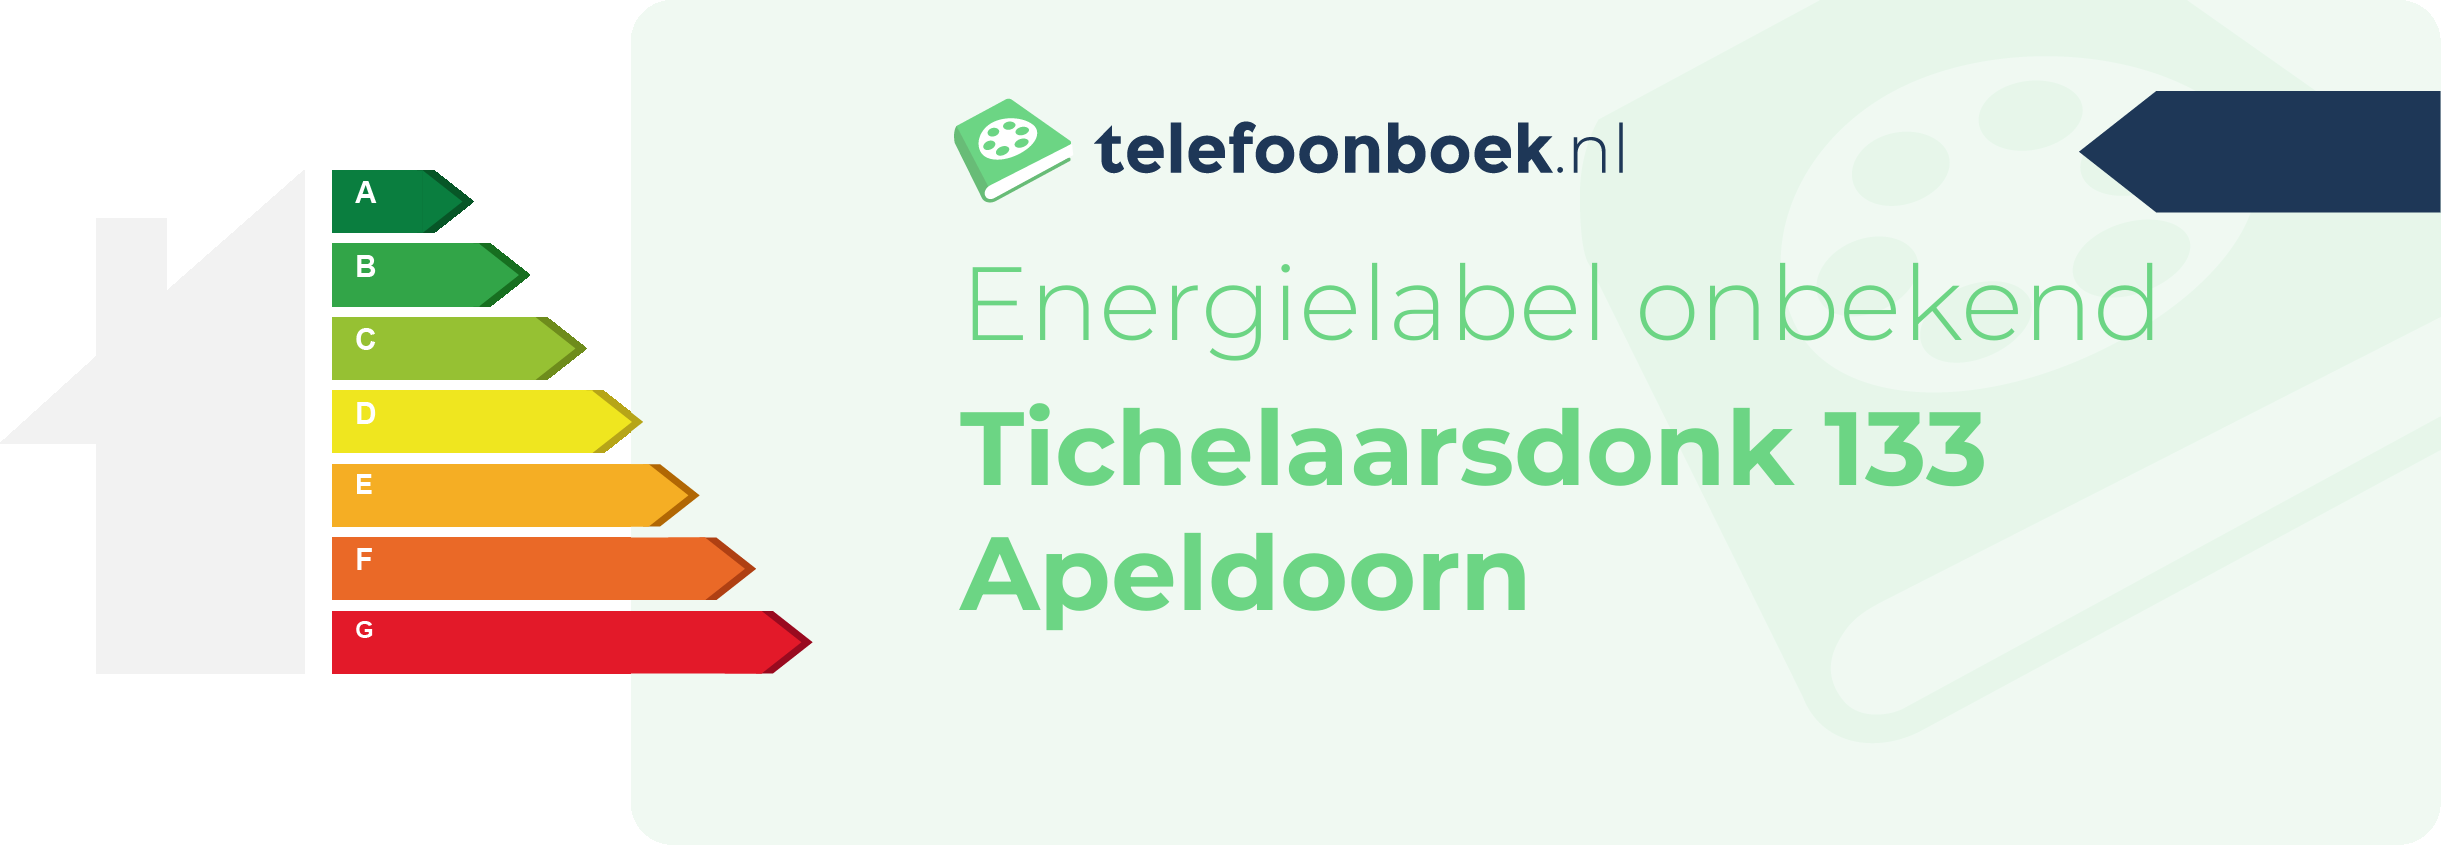 Energielabel Tichelaarsdonk 133 Apeldoorn